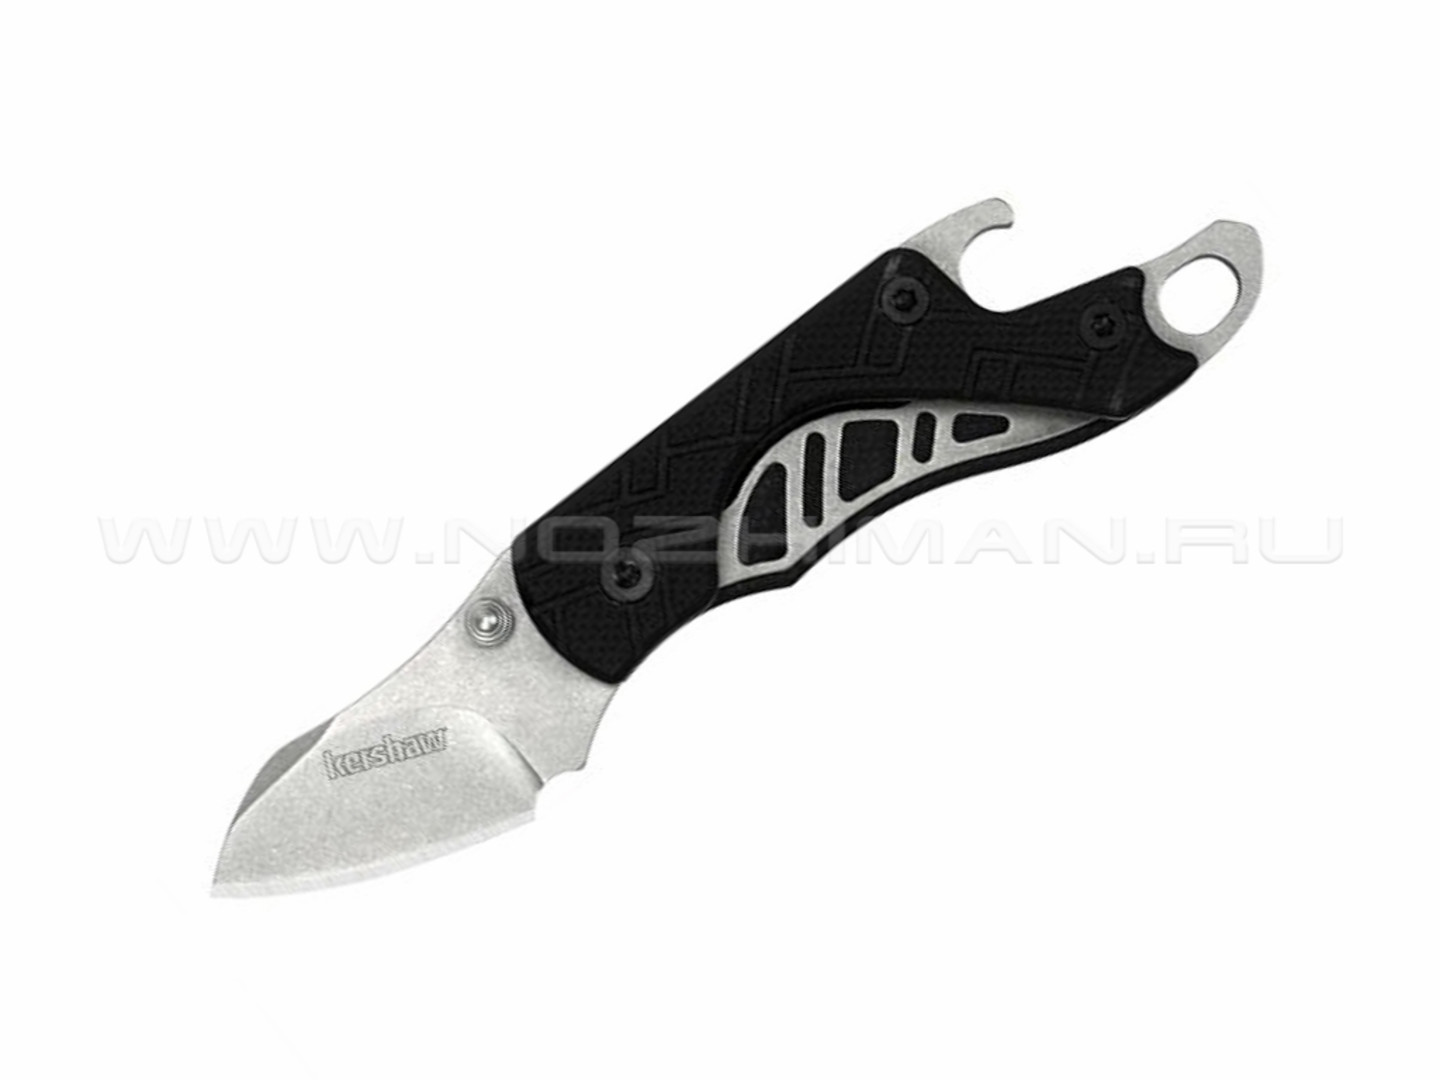 Нож Kershaw Cinder 1025 сталь 3Cr13MoV рукоять GFN